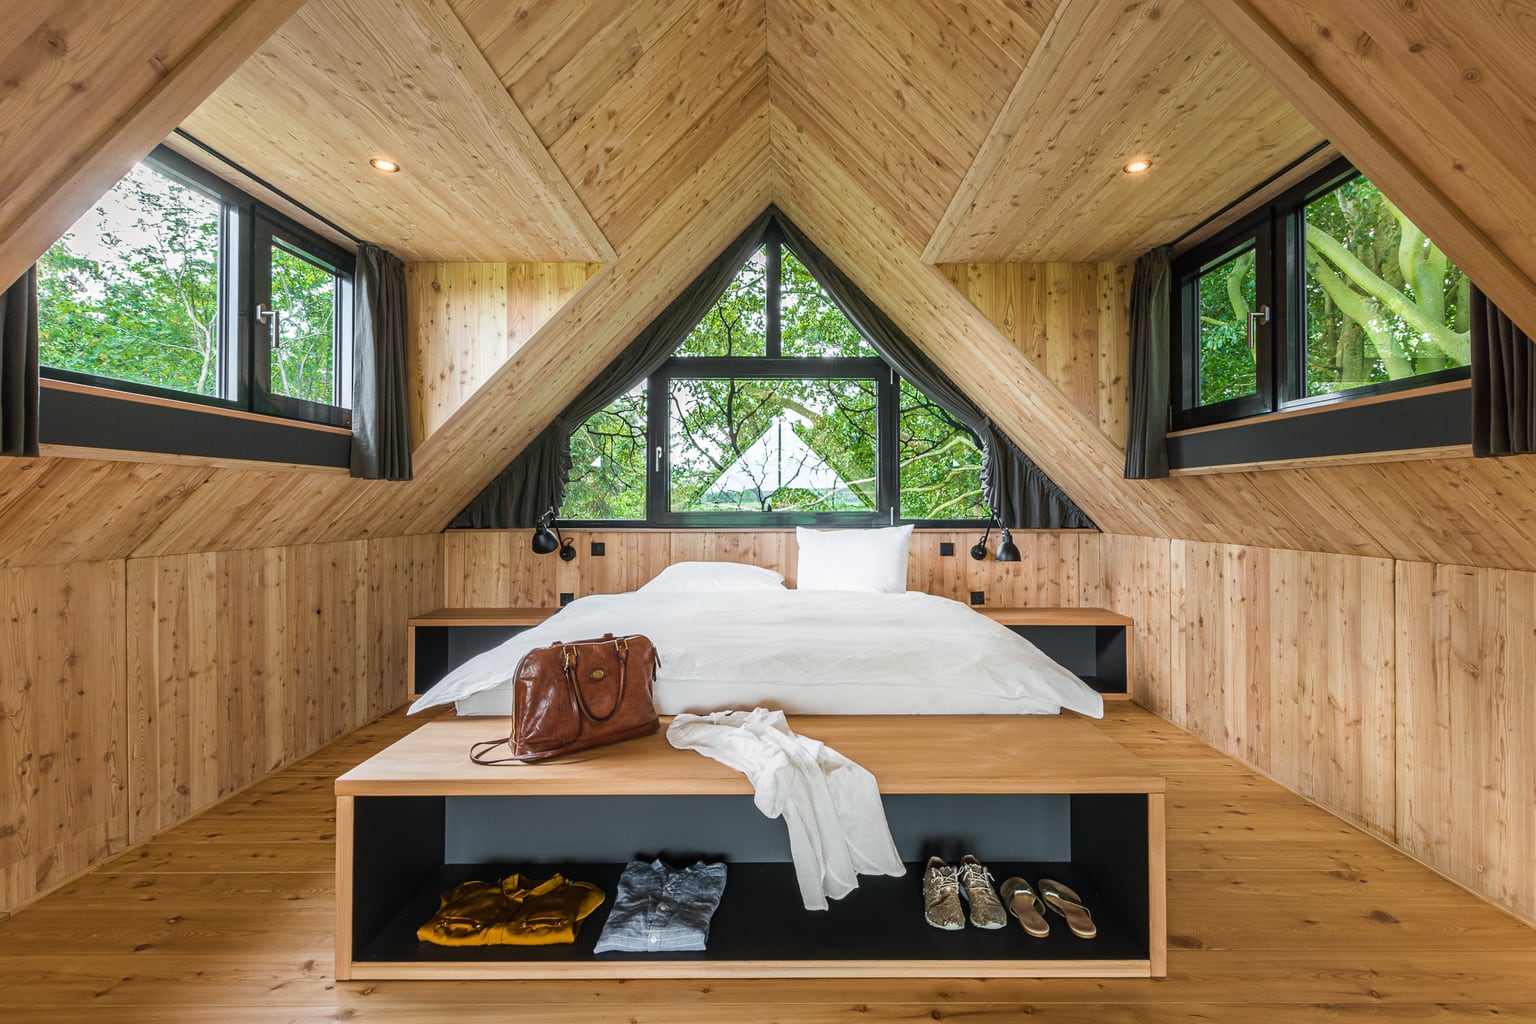 Slaapkamer in het boomhuis van Hotel Lütetsburg Lodges in Nedersaksen met veel hout